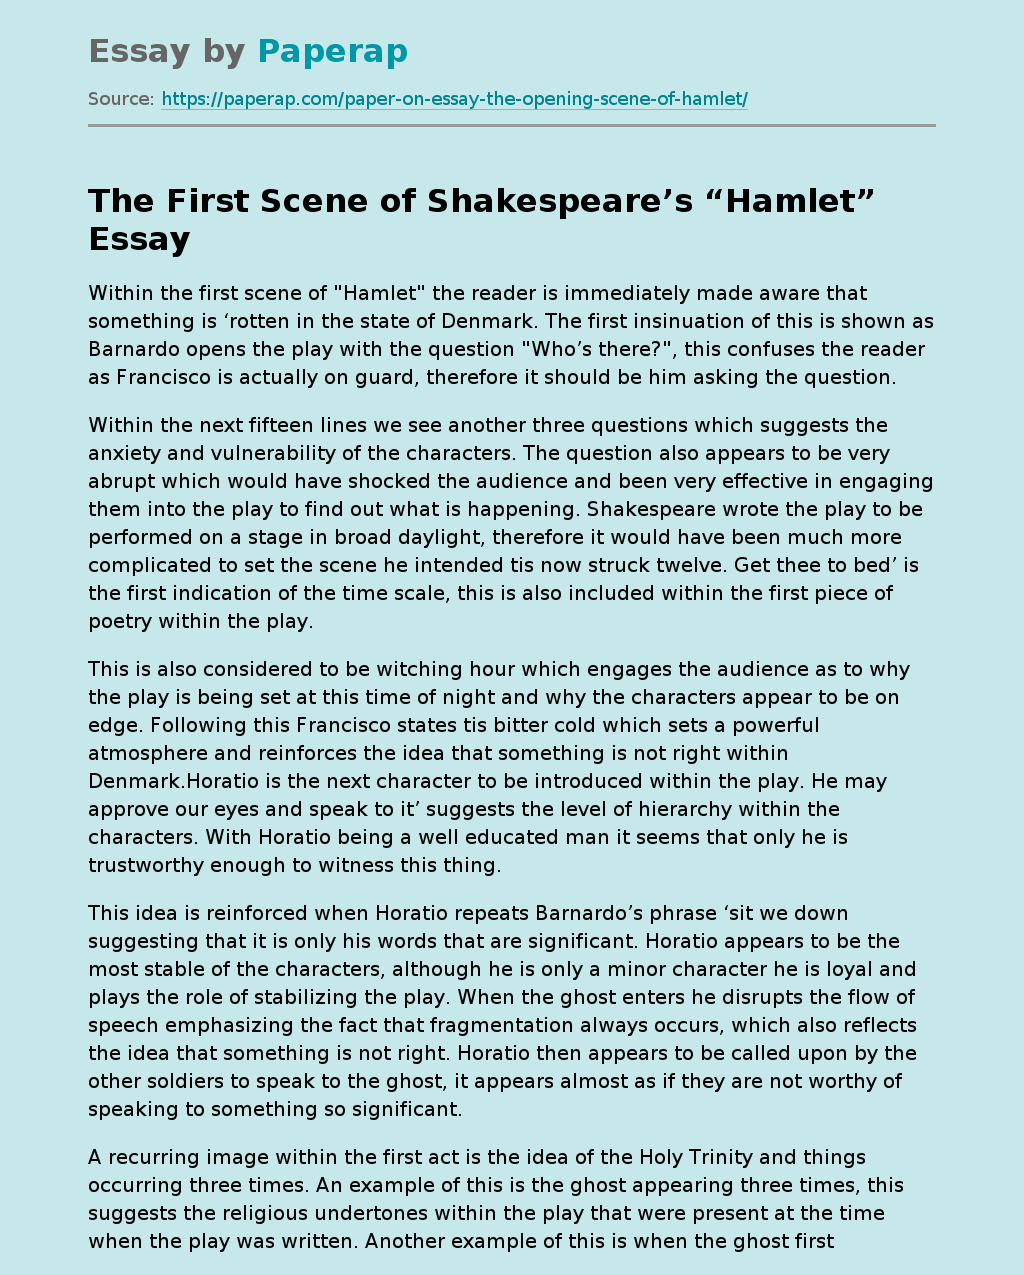 The First Scene of Shakespeare’s “Hamlet”